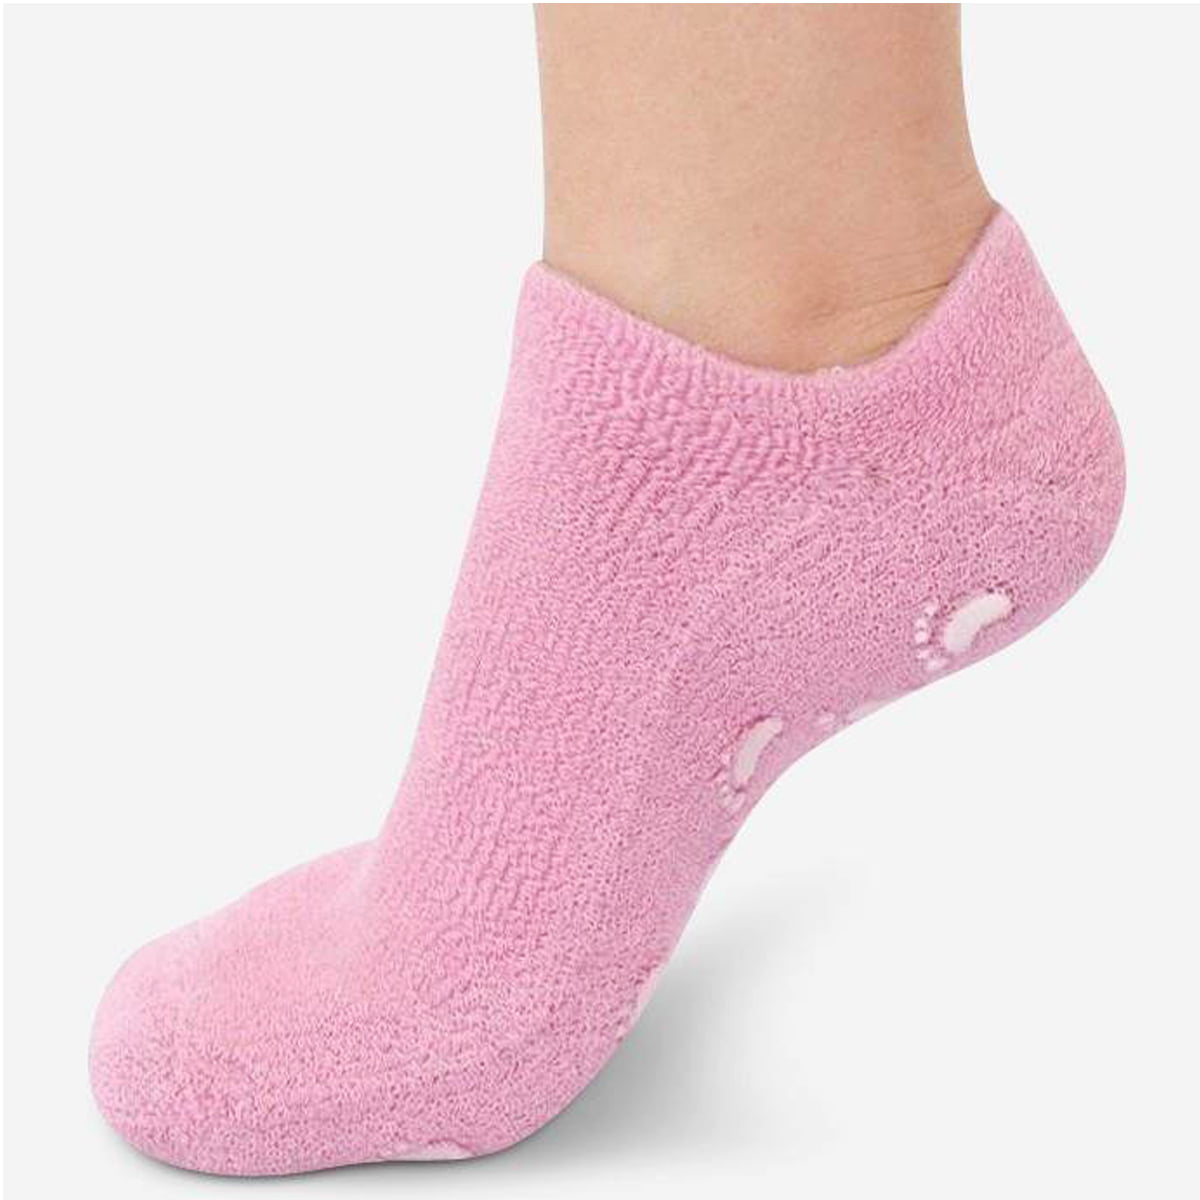 Увлажняющие носочки. Spa Gel Socks носки. Носки гелевые увлажняющие. Носки для увлажнения ног. Носки с гелевым покрытием.